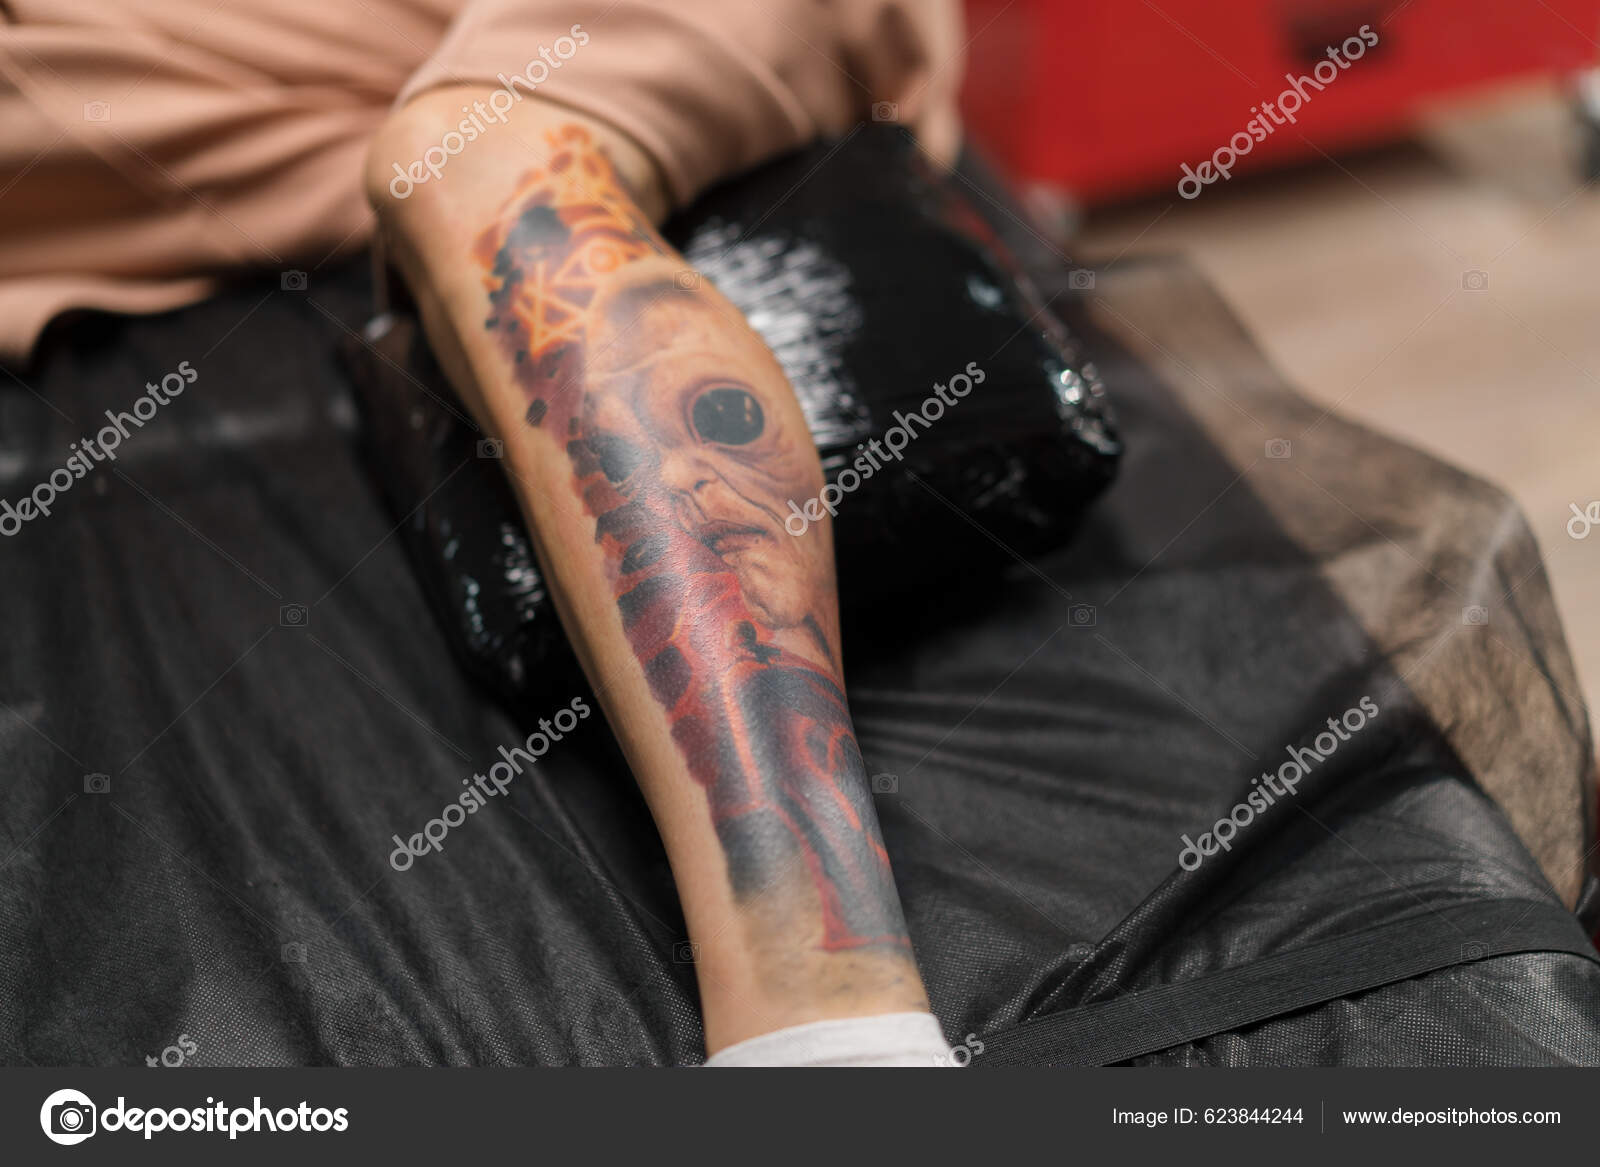 Chris Beck • Tattoo Artist | Revolt Tattoos